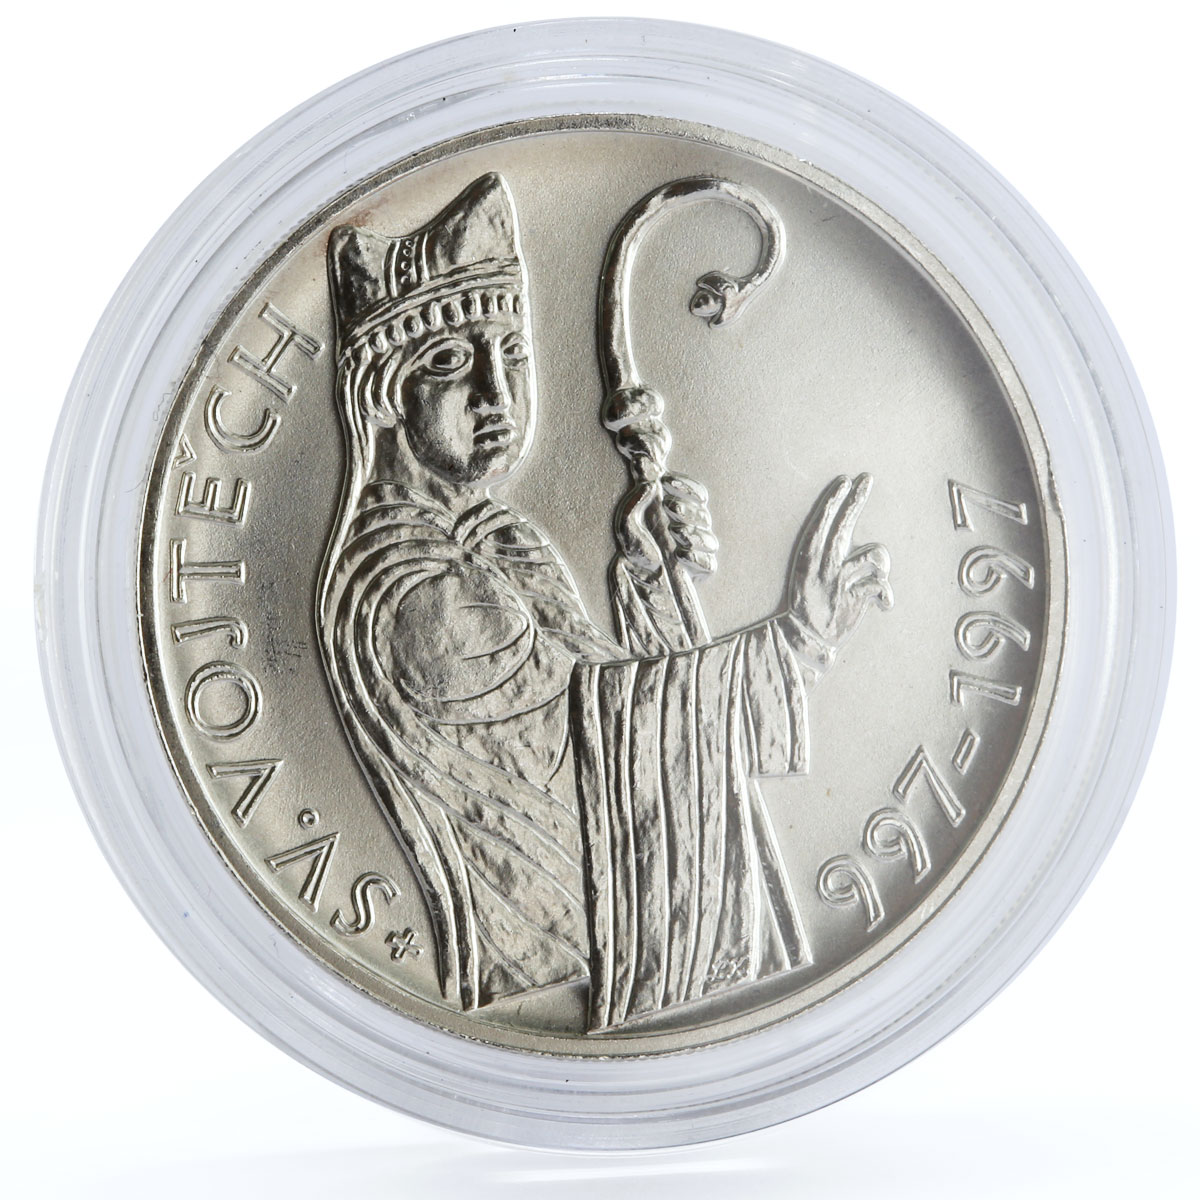 Czech Republic 200 korun Holy Father Saint Adalbert of Prague silver coin 1997